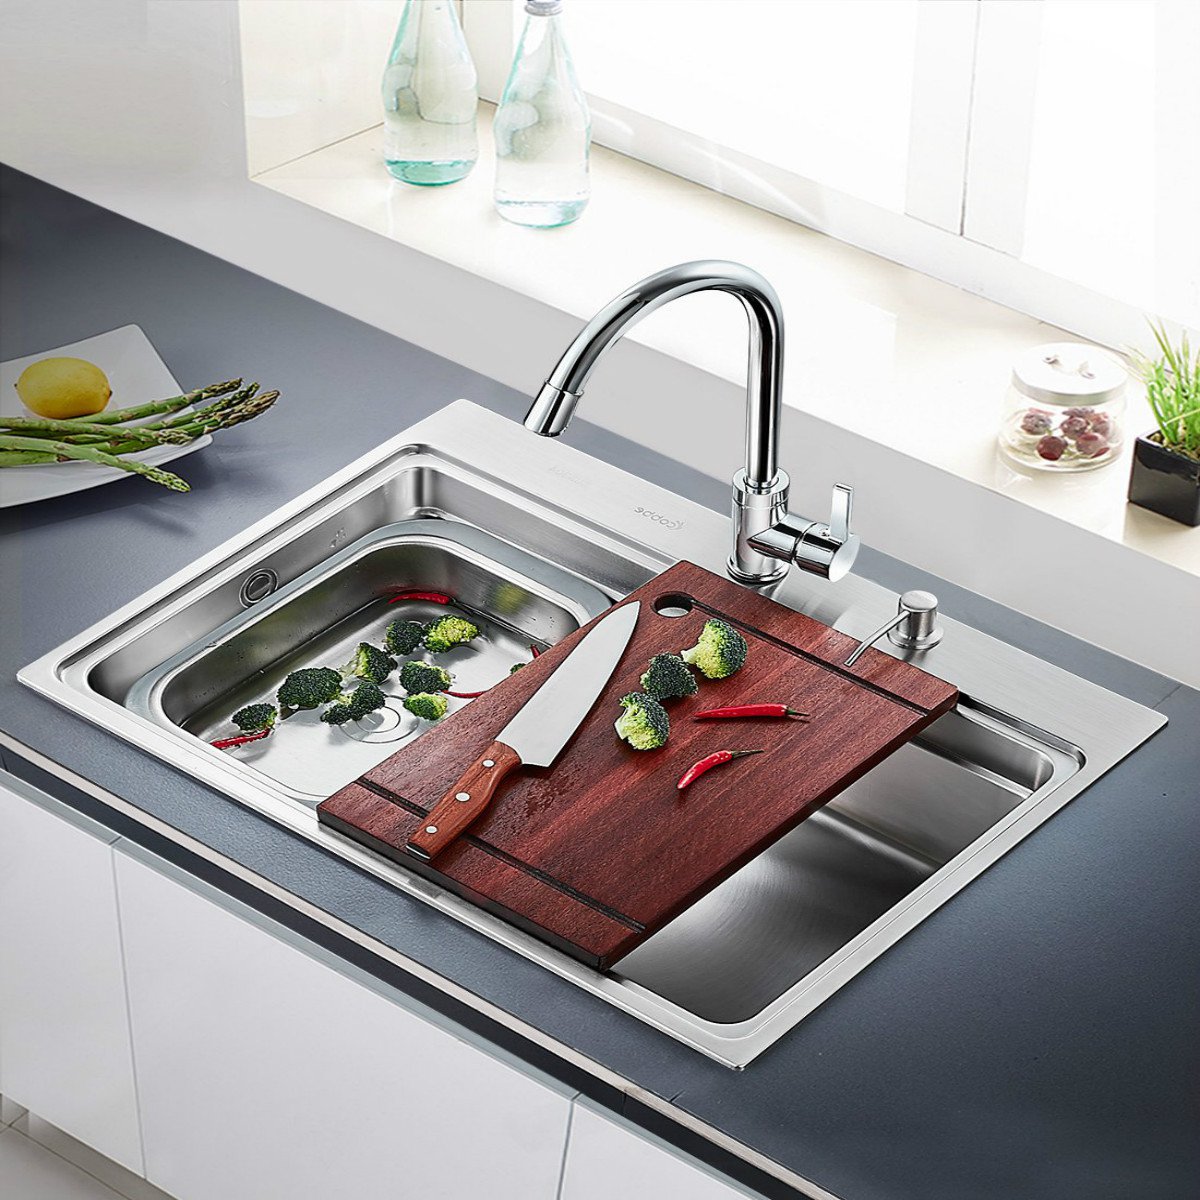 卡贝304不锈钢厨房小r角直角单槽水槽套装洗碗池洗菜盆套餐加沥水盘带